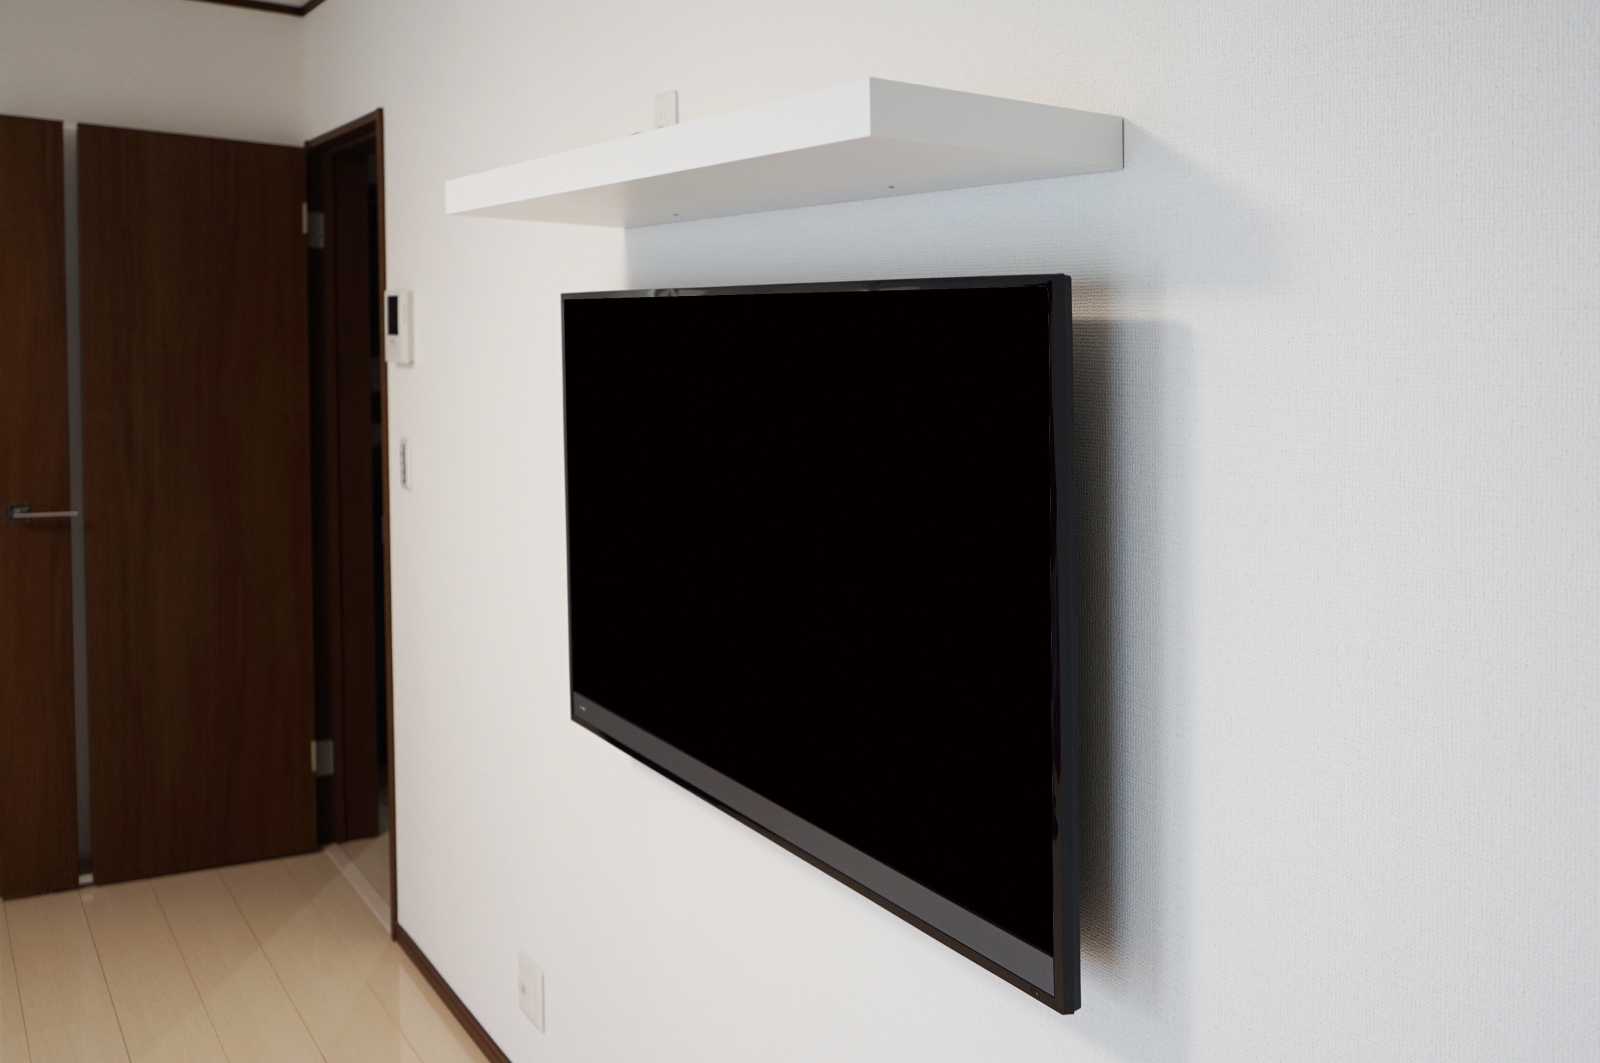 広い壁のフラット感とマッチする壁掛けテレビ